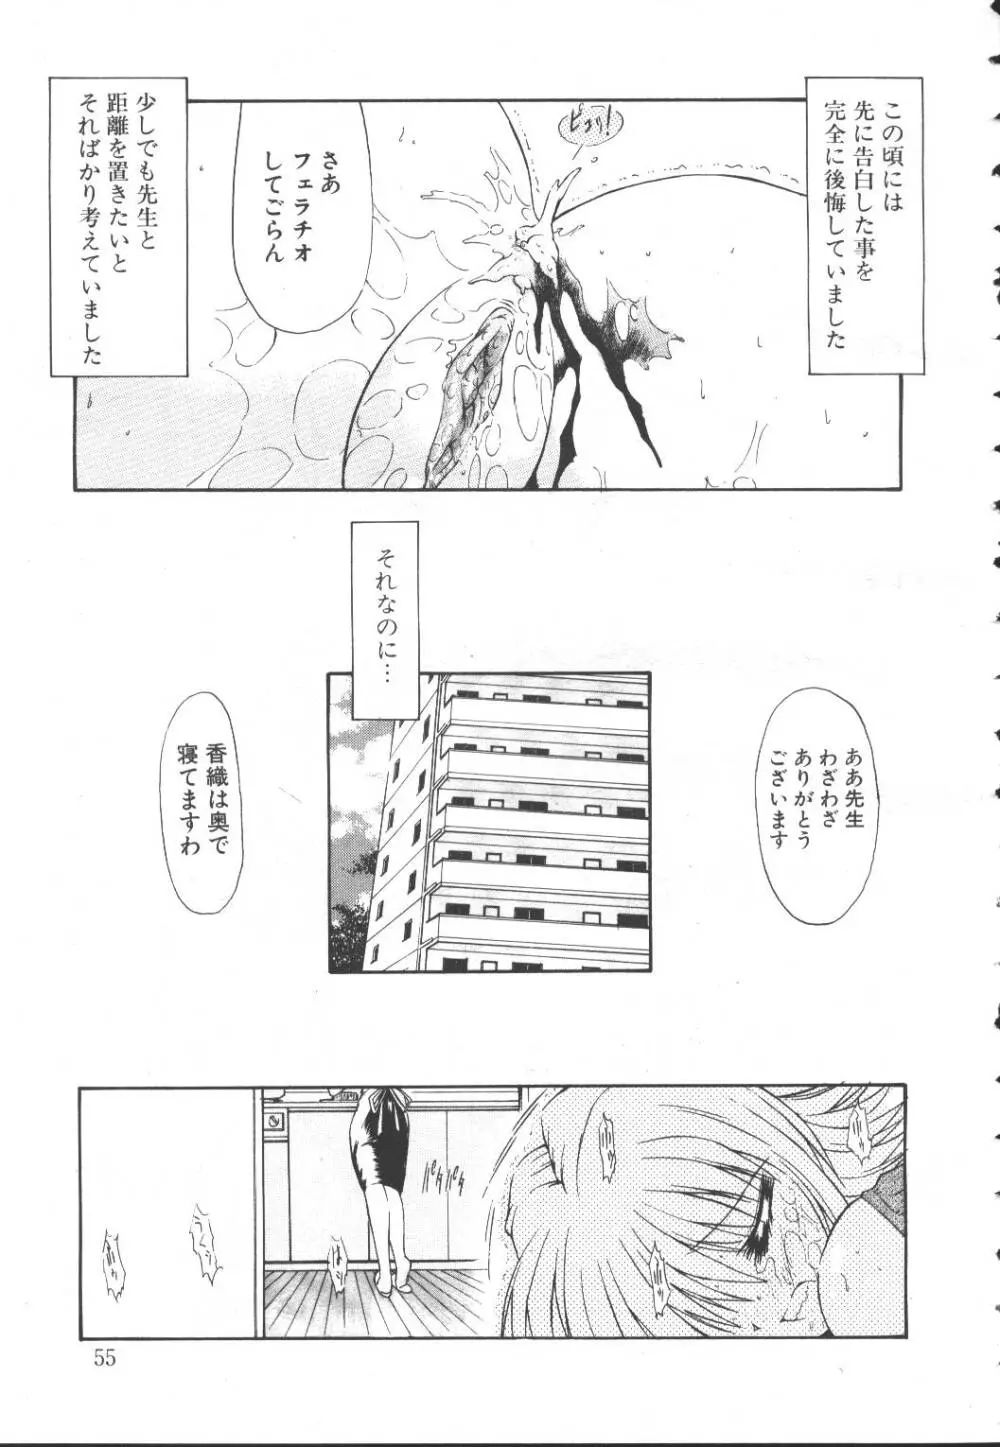 桜花 Vol.01 1999-10 52ページ